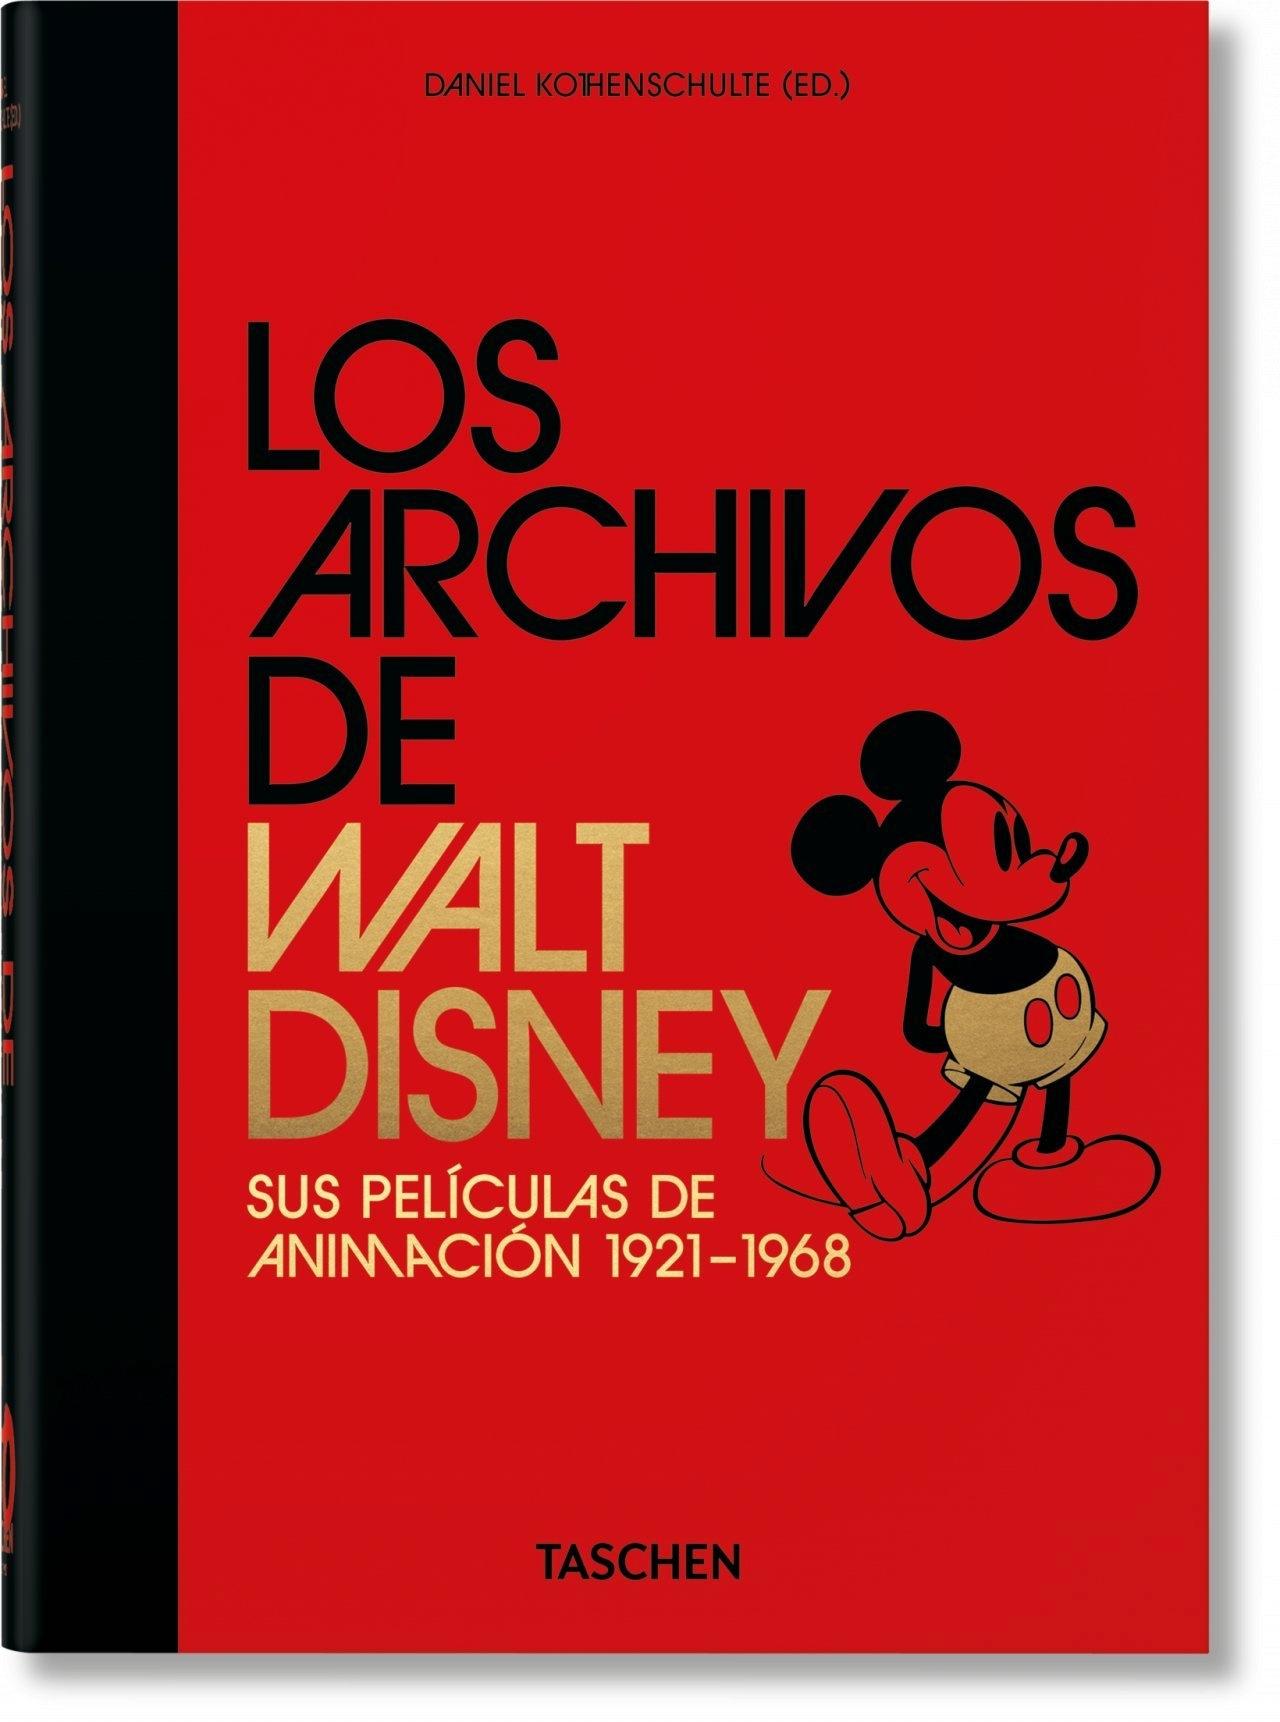 LOS ARCHIVOS DE WALT DISNEY: SUS PELÍCULAS DE ANIMACIÓN. 40TH ANNIVERSARY EDITION